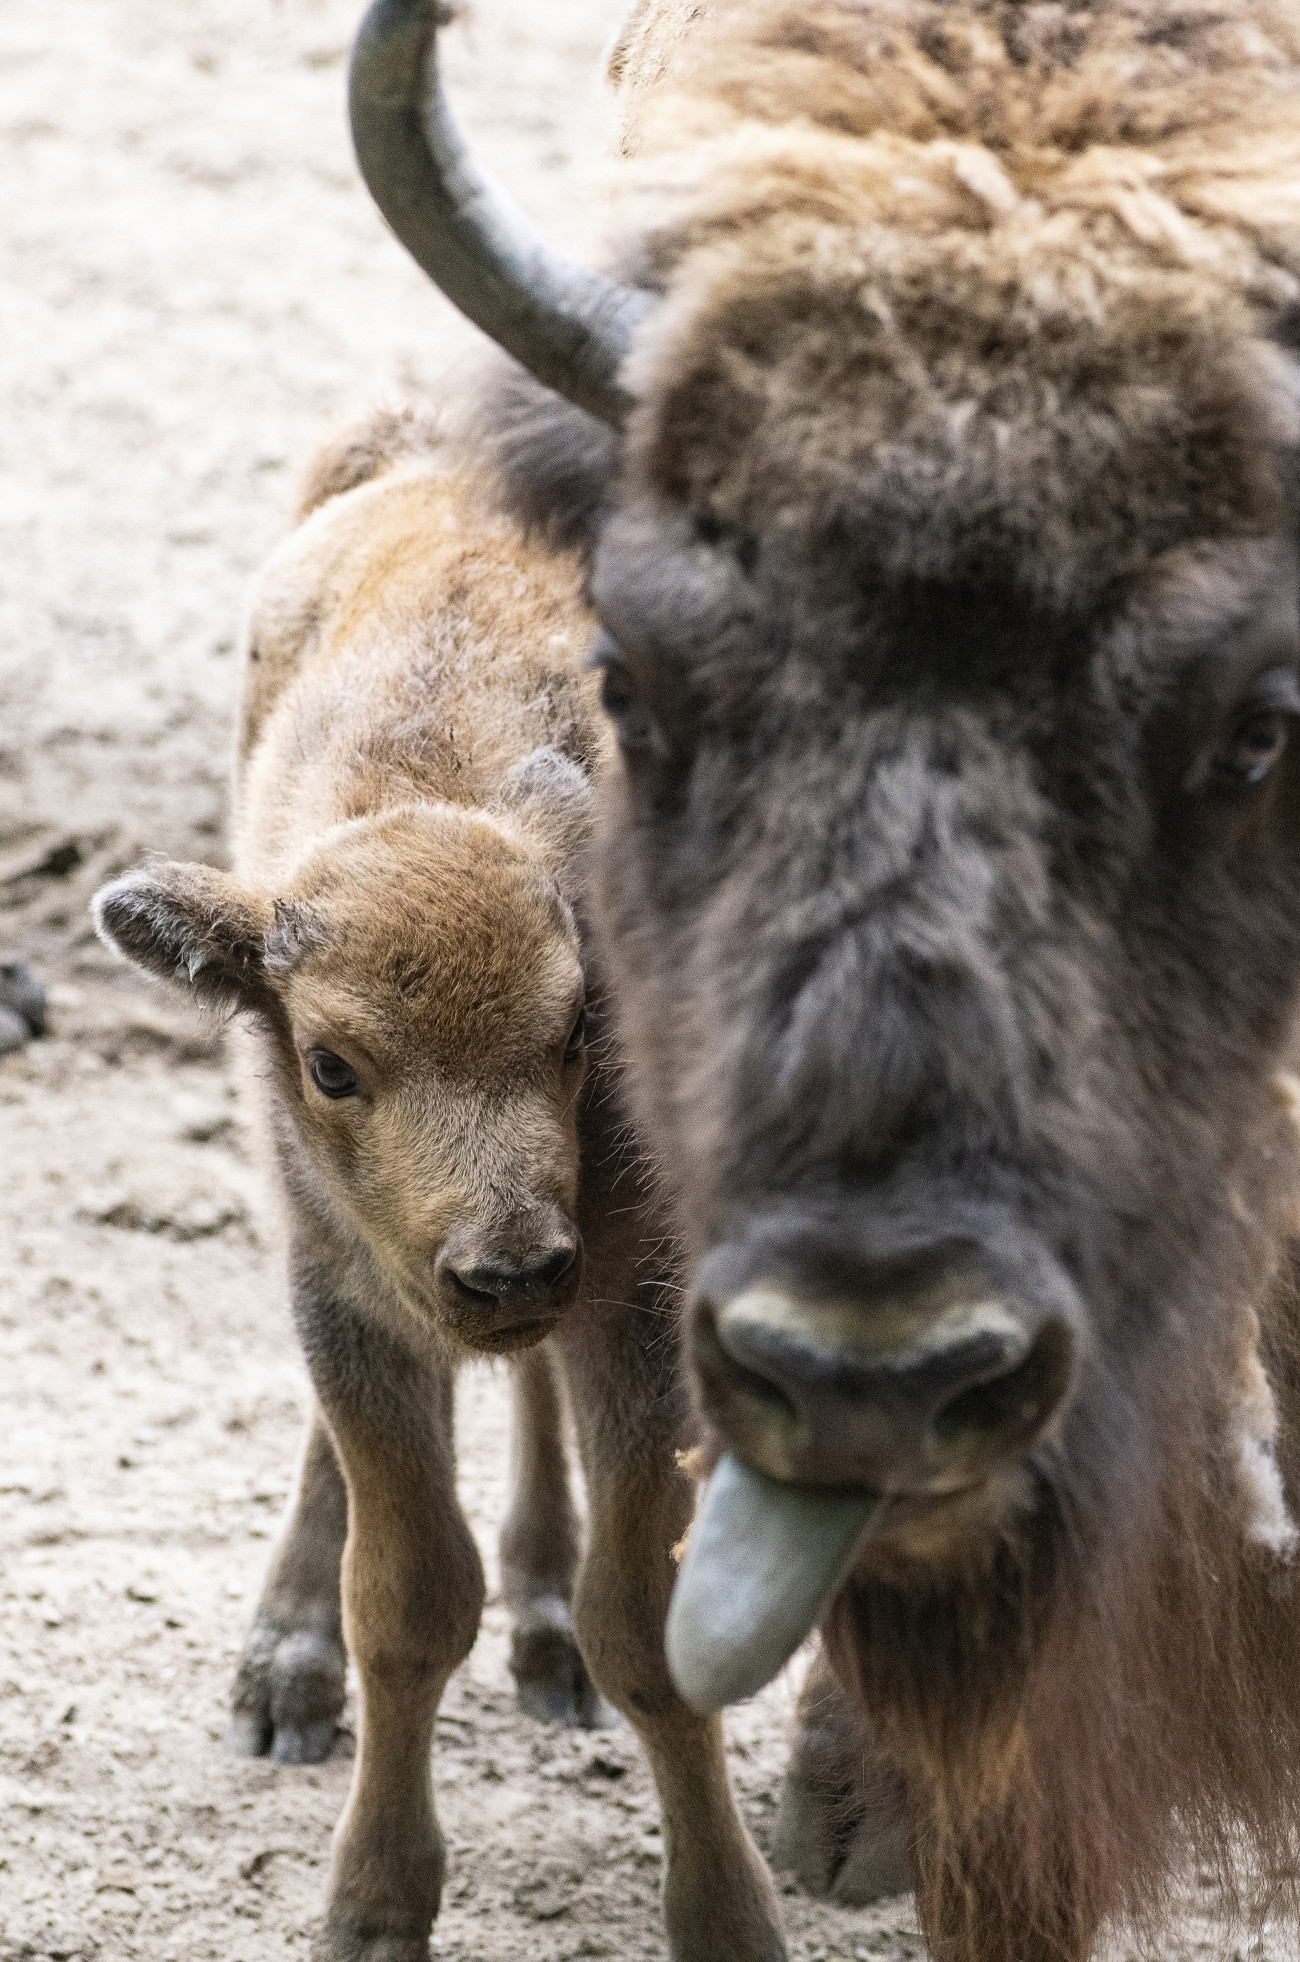 Nyíregyháza, 2020. május 18.
Egyhetes európai bölény-bikaborjú (Bison bonasus) anyjával a Nyíregyházi Állatpark kifutójában 2020. május 18-án. Az európai bölény a természetben kipusztult, az utolsó egyedet 1919. február 21-én egy vadorzó ölte meg Lengyelországban, a bialowiezai őserdőben. Az állatkertekben összesen 56 bölény maradt, és az összefogásuk eredményeként elkezdődött a bölények szaporítása és folyamatos visszatelepítése. Az Európai Fajmegőrzési Program keretében Nyíregyházán öt egyedet tartanak Európa legnagyobb testű szárazföldi emlőséből.
MTI/Balázs Attila